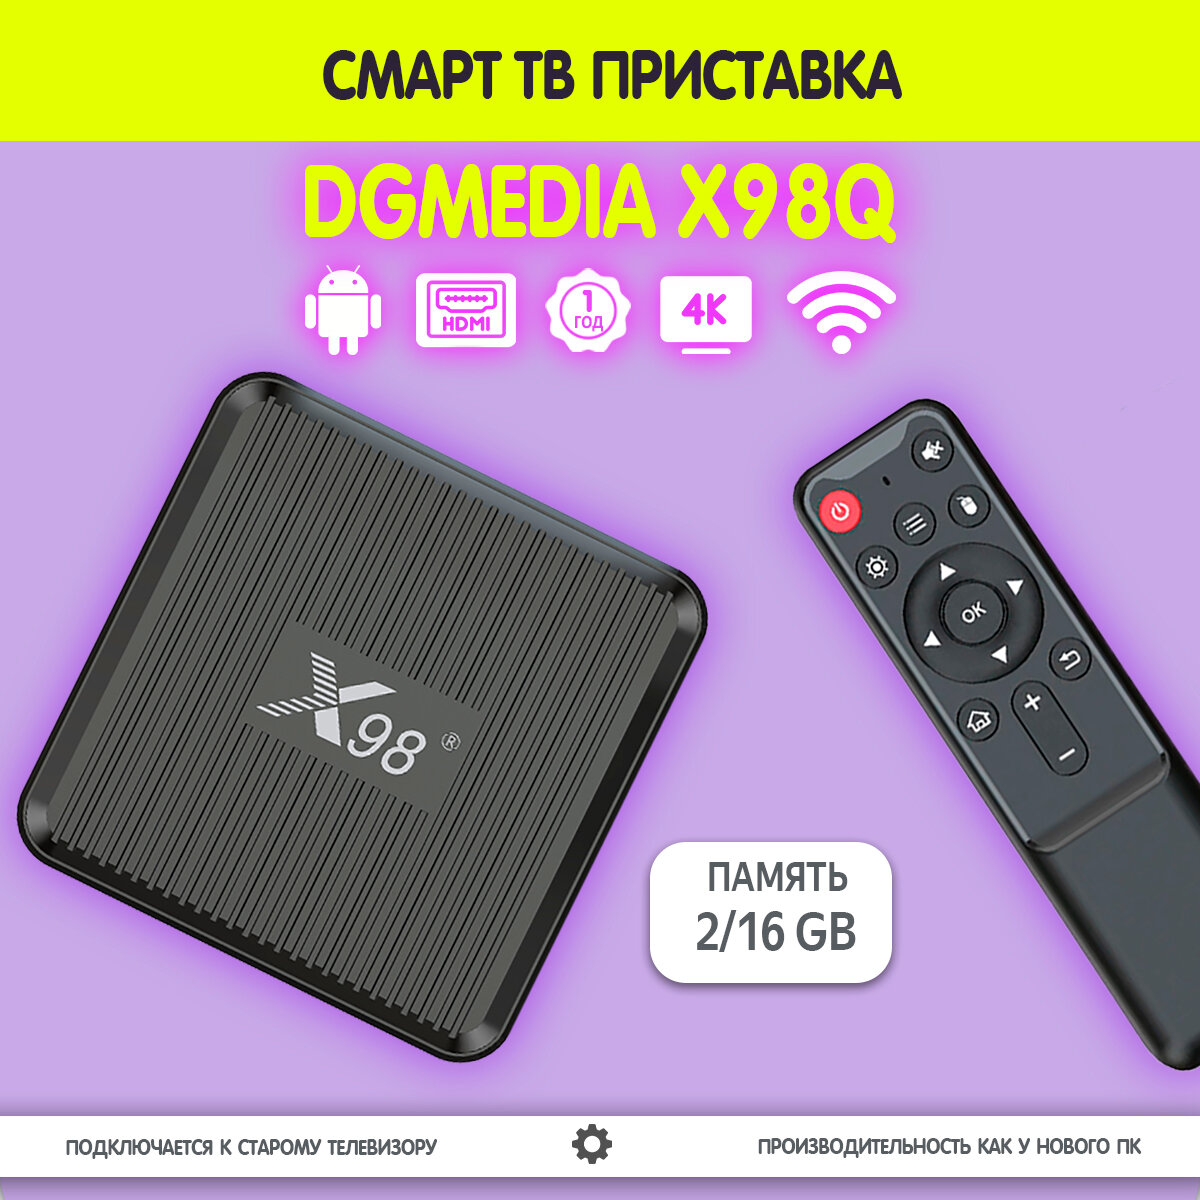 Смарт ТВ приставка DGMedia X98Q, Андроид медиаплеер 2/16 Гб, Wi-Fi, 4K, Amlogic S905W2